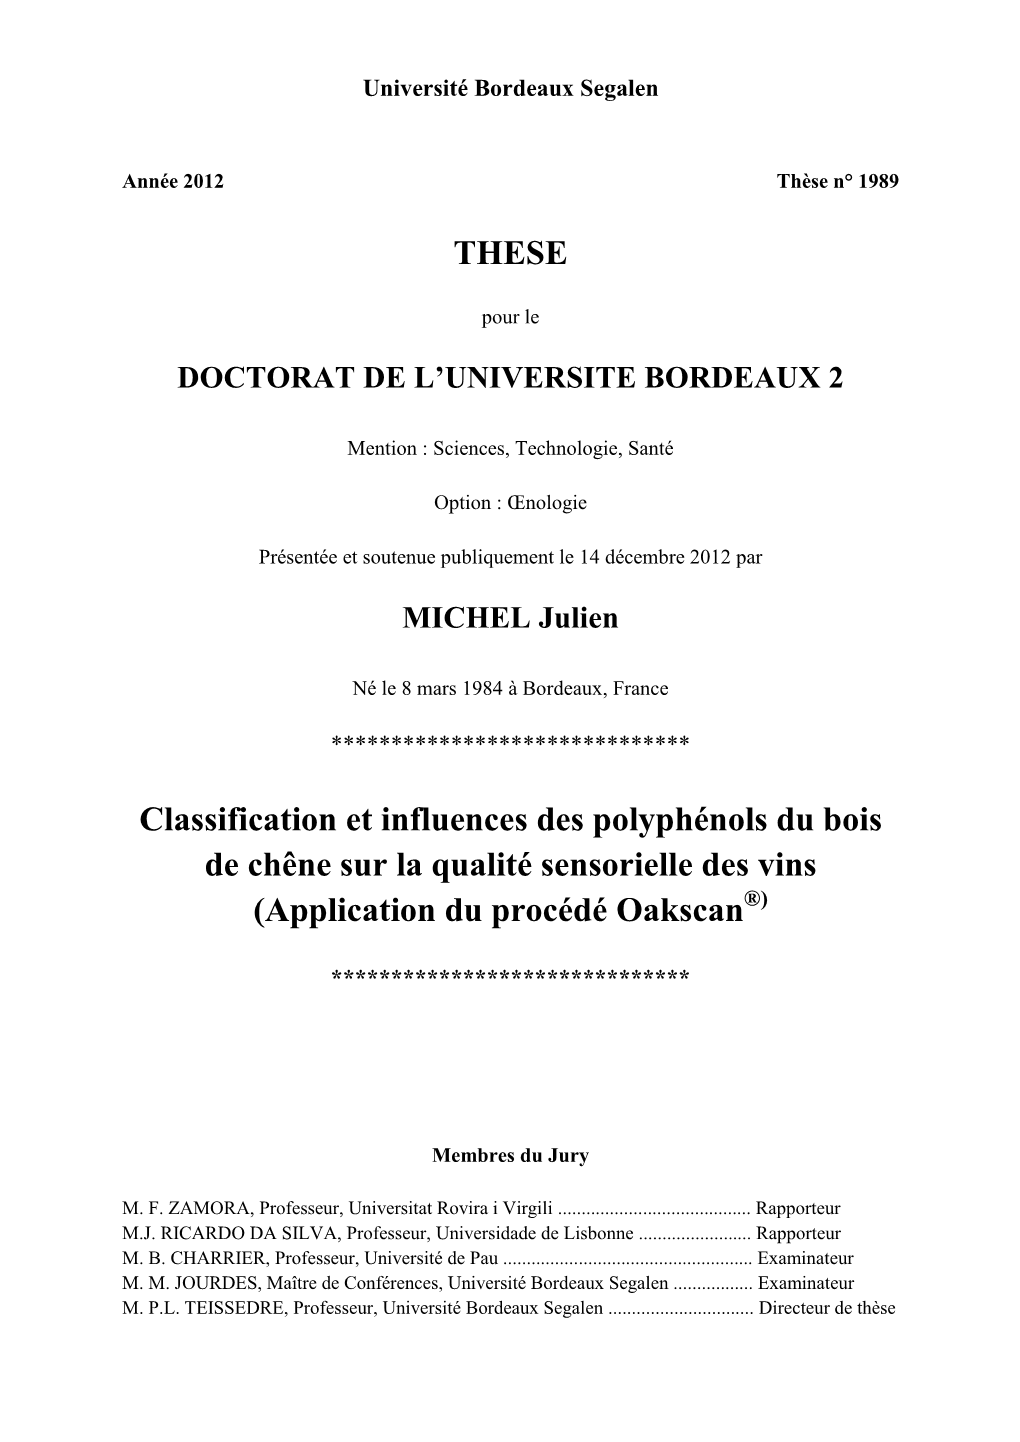 THESE Classification Et Influences Des Polyphénols Du Bois De Chêne